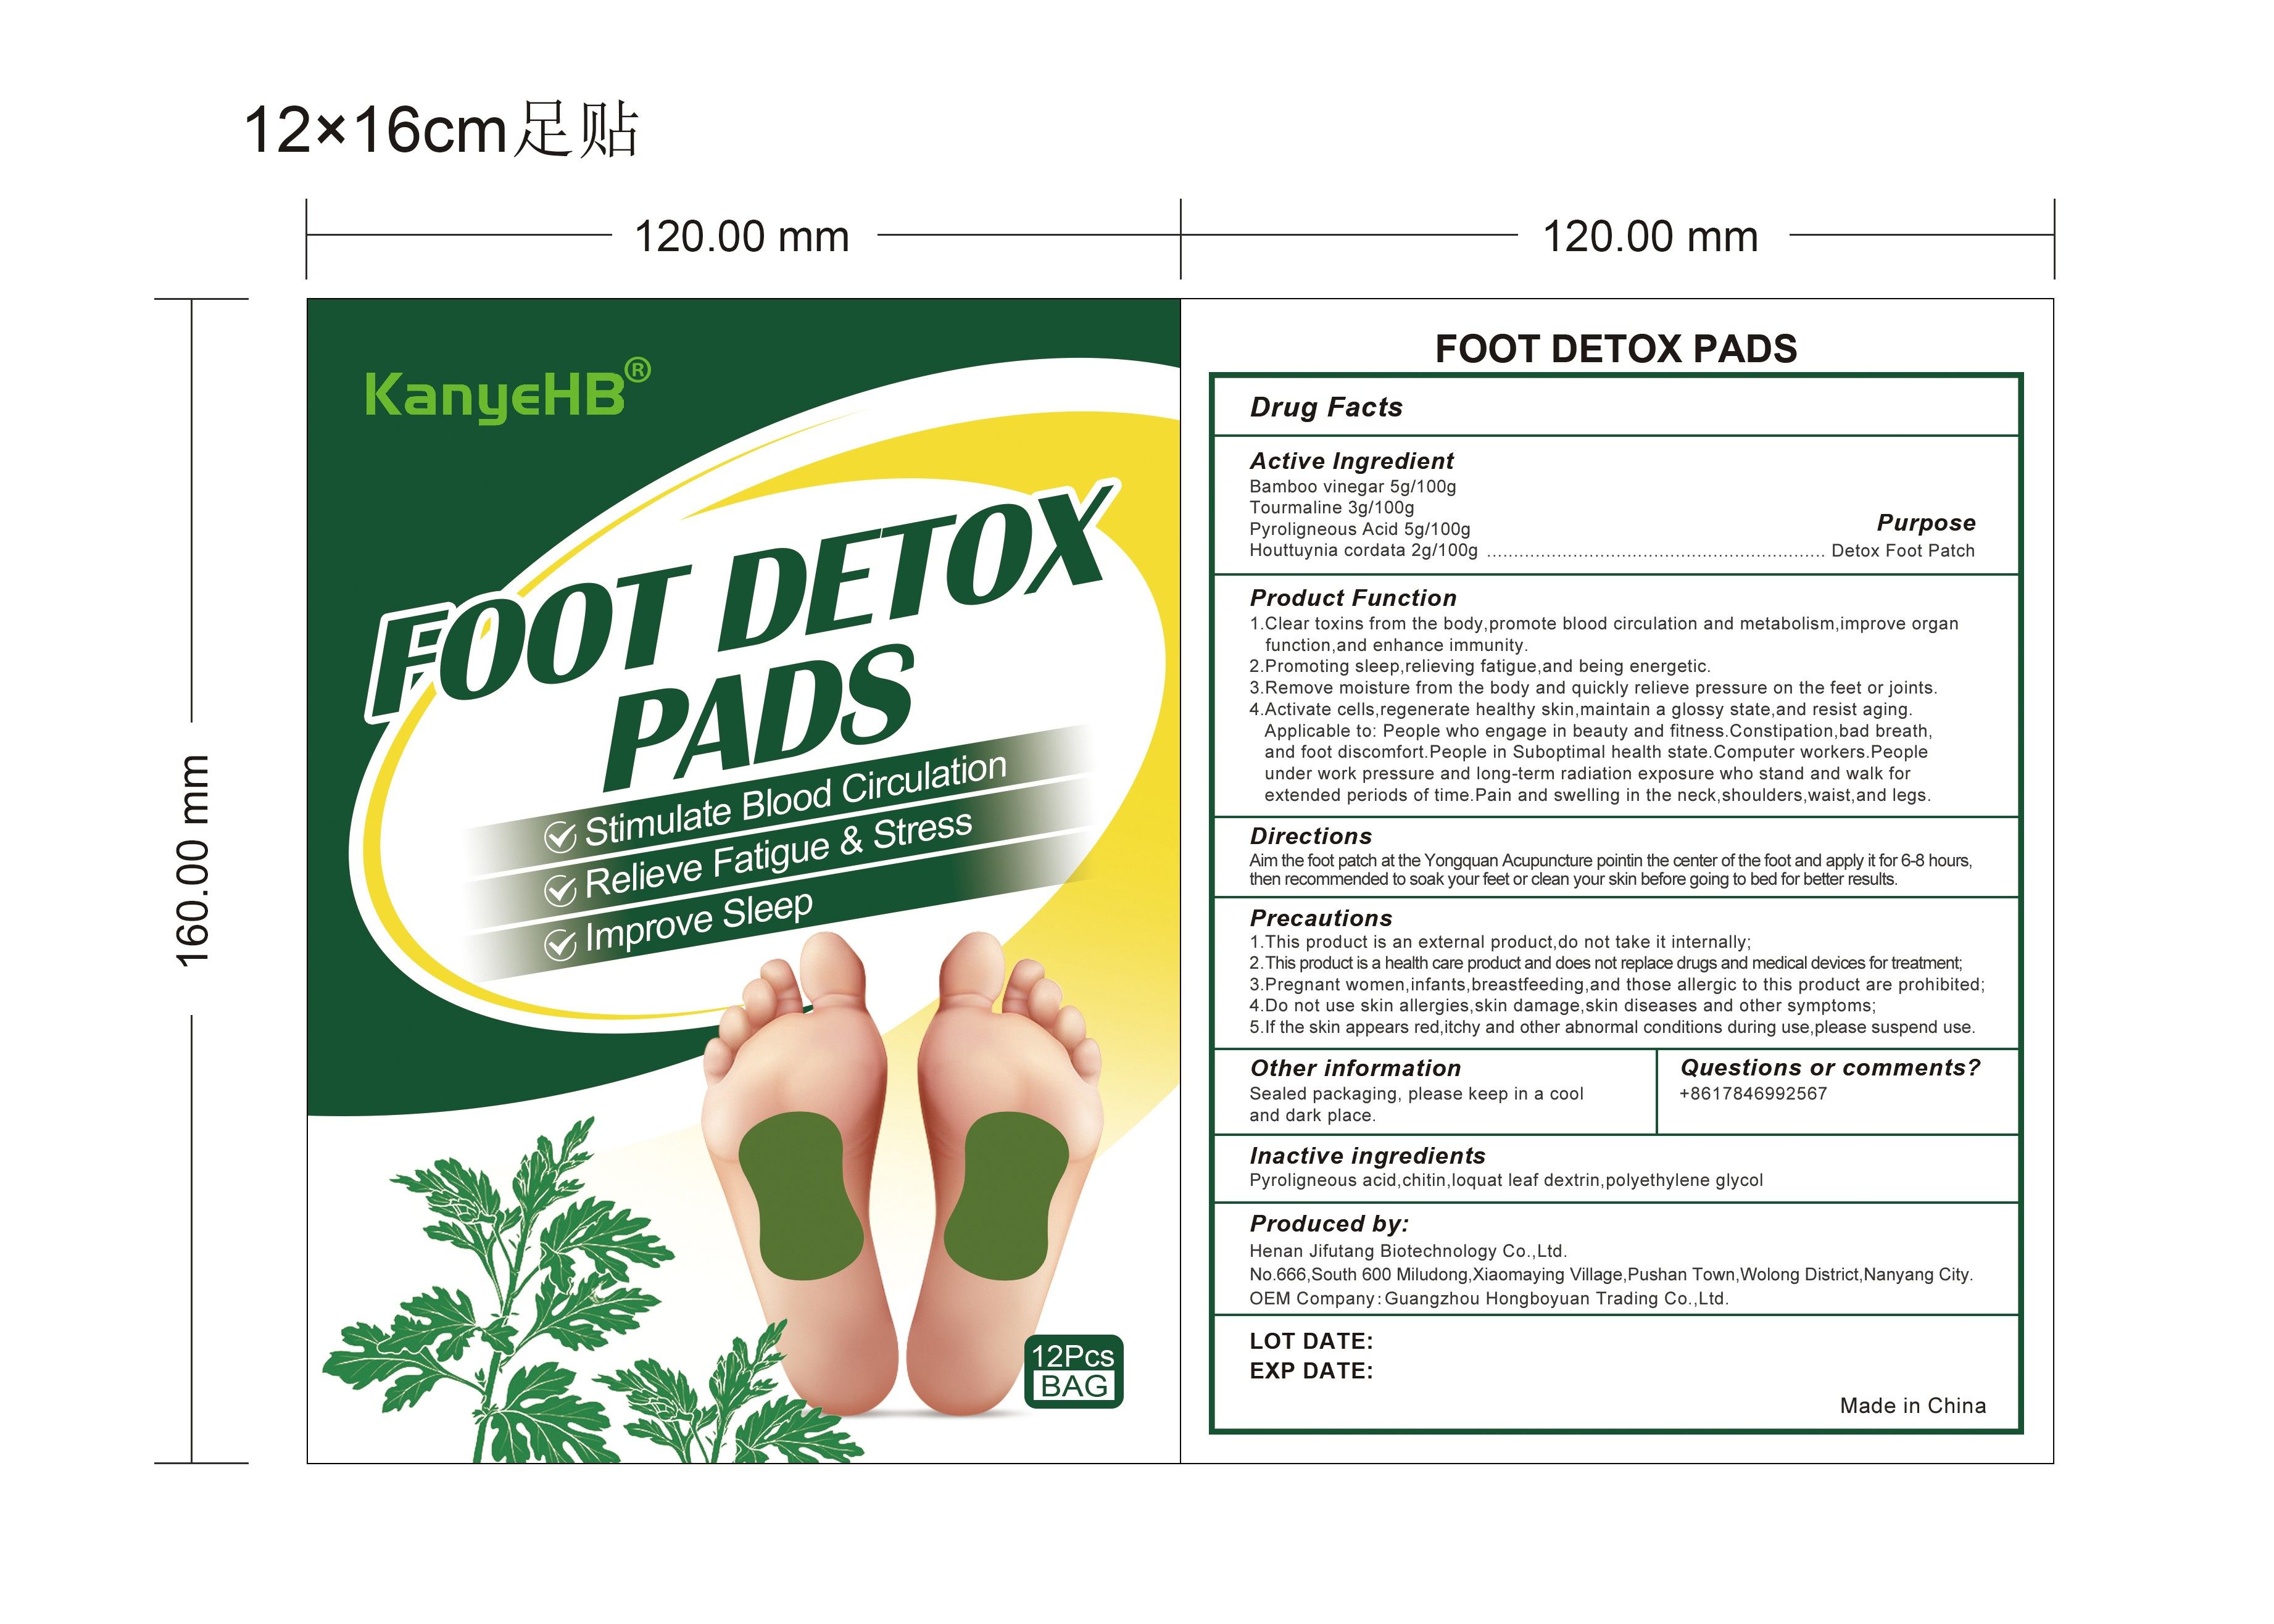 Foot Detox Pads label